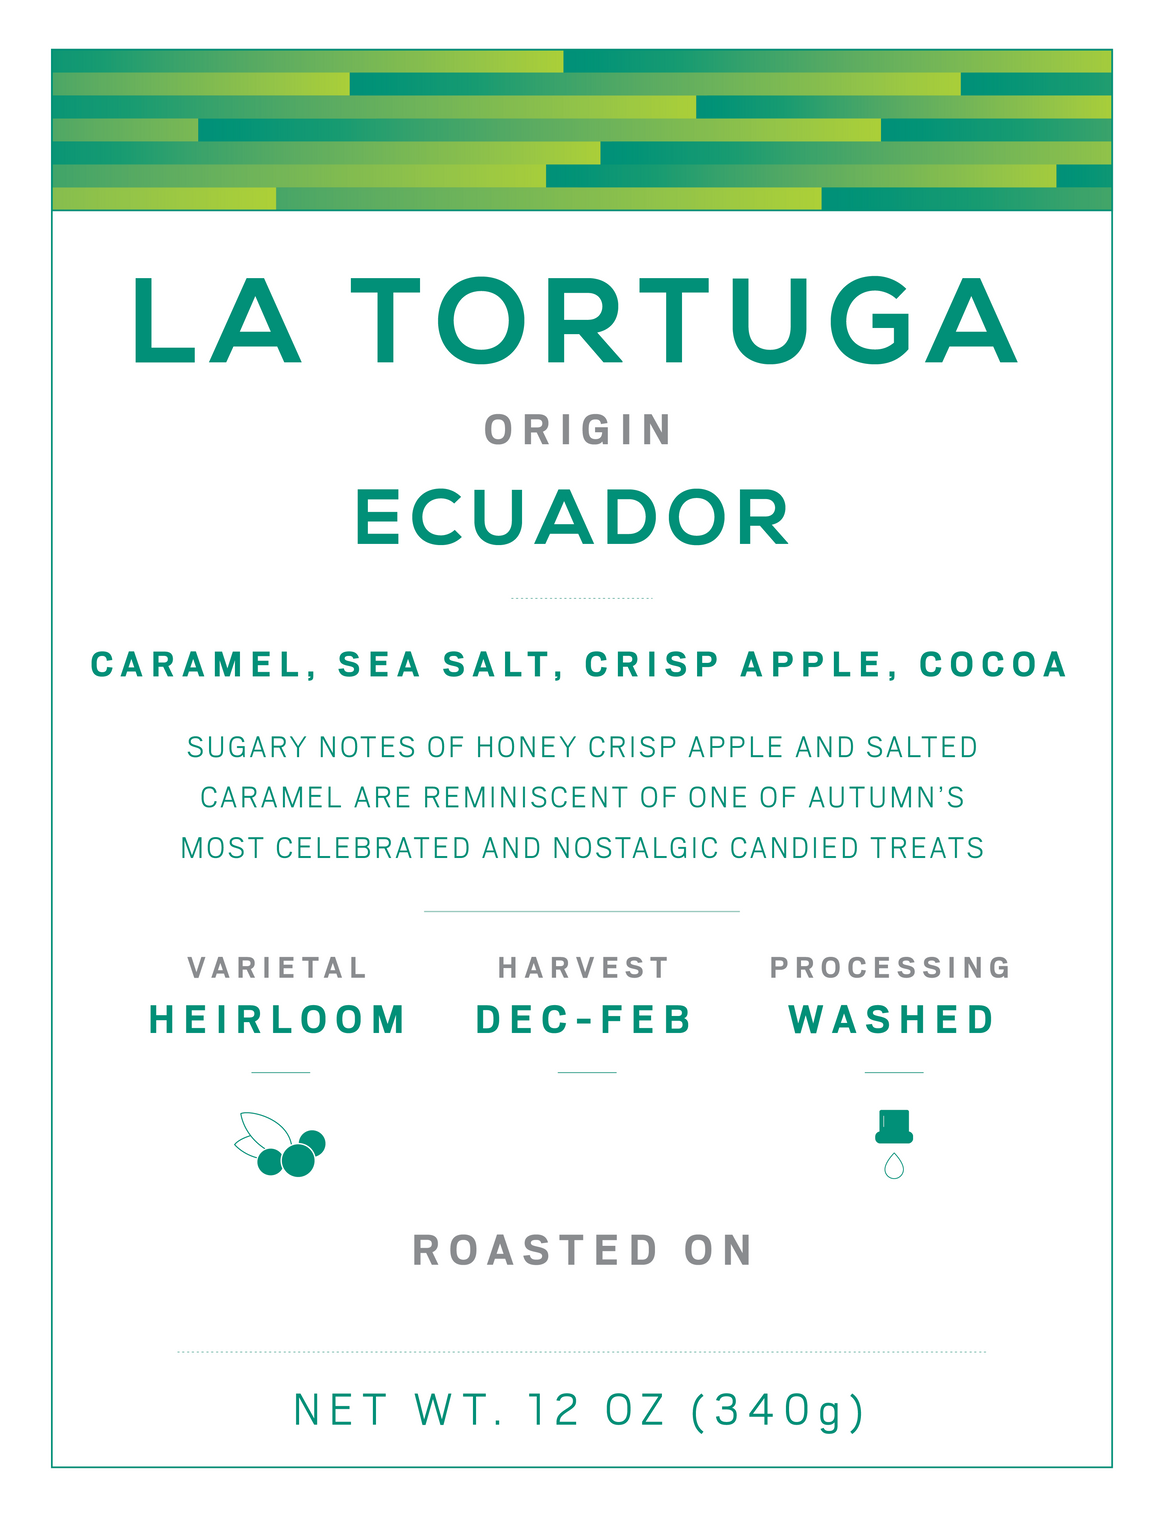 La Tortuga Ecuador